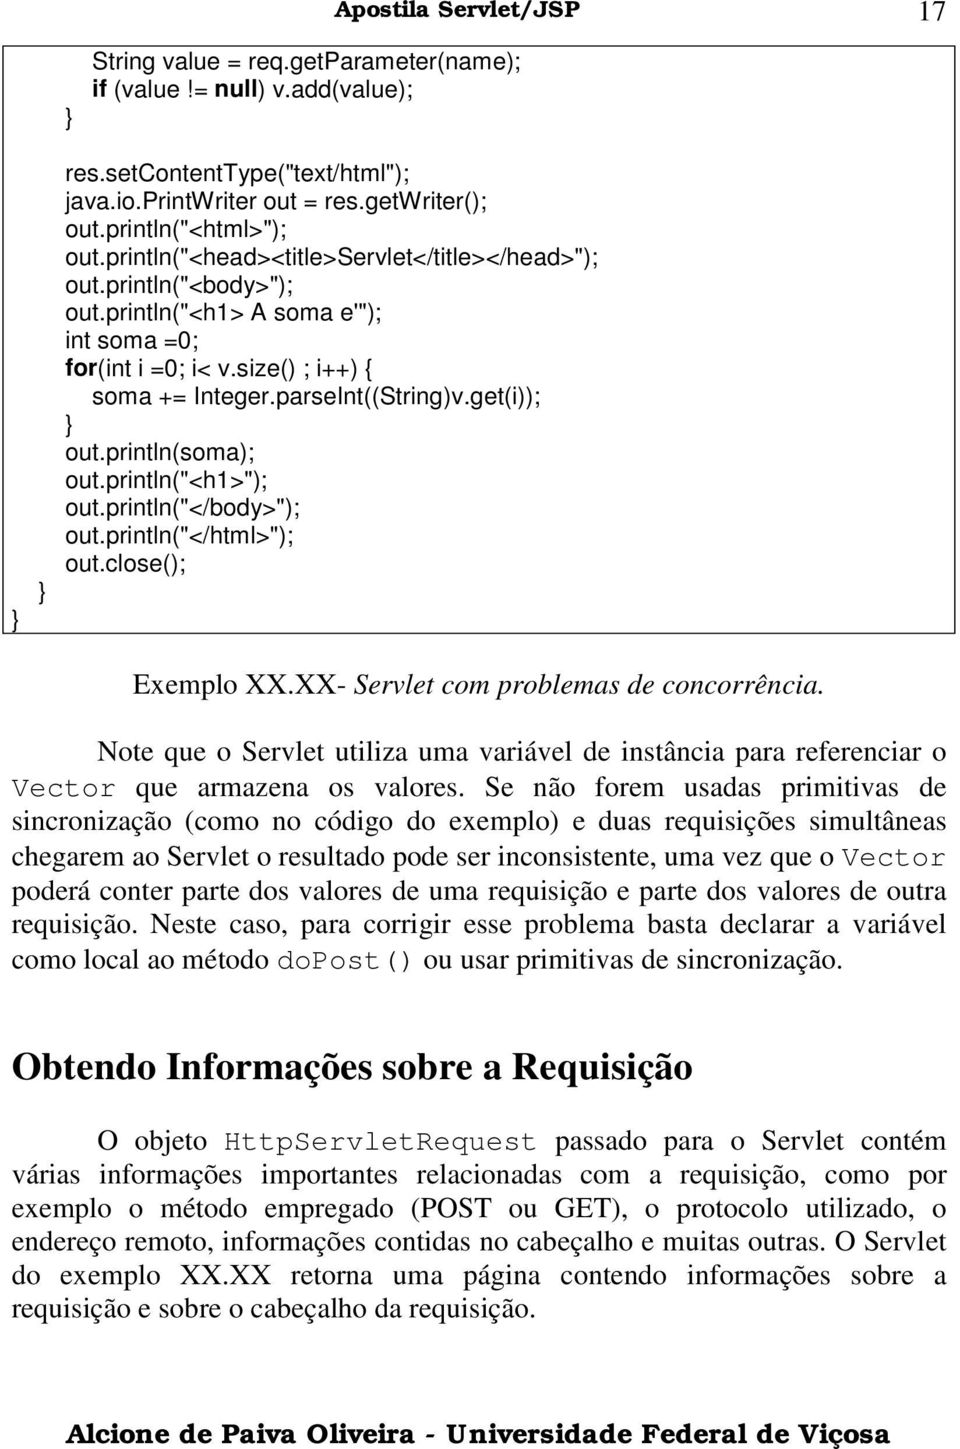 println(soma); out.println("<h1>"); out.println("</body>"); out.println("</html>"); out.close(); Exemplo XX.XX- Servlet com problemas de concorrência.